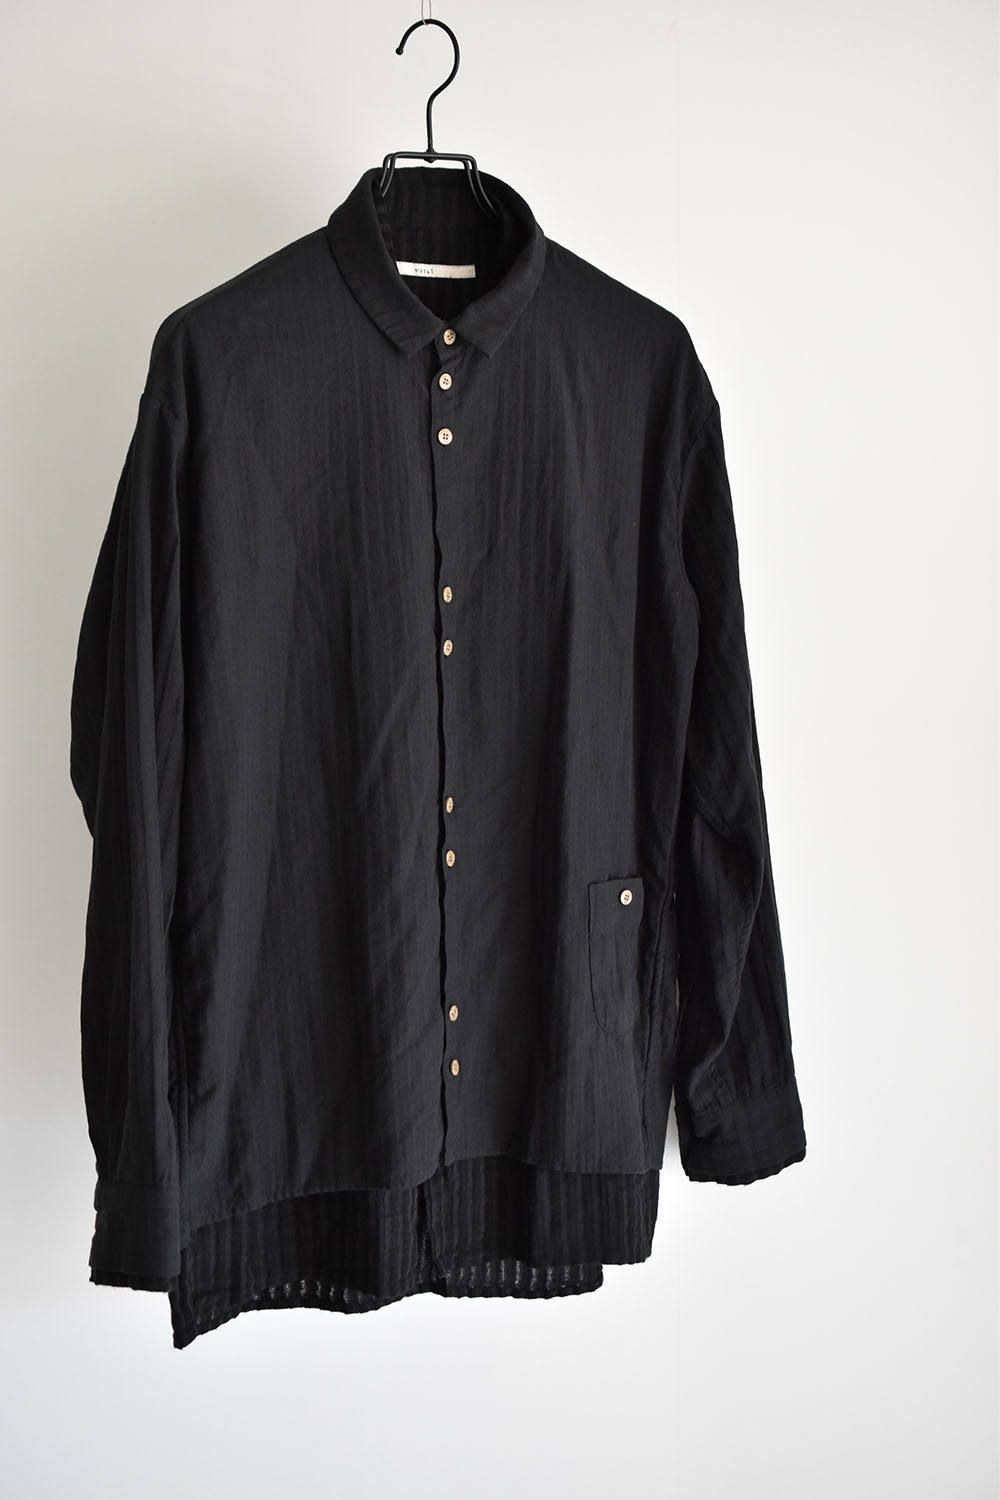 Layered Shirts "Black" /レイヤードシャツ"ブラック"